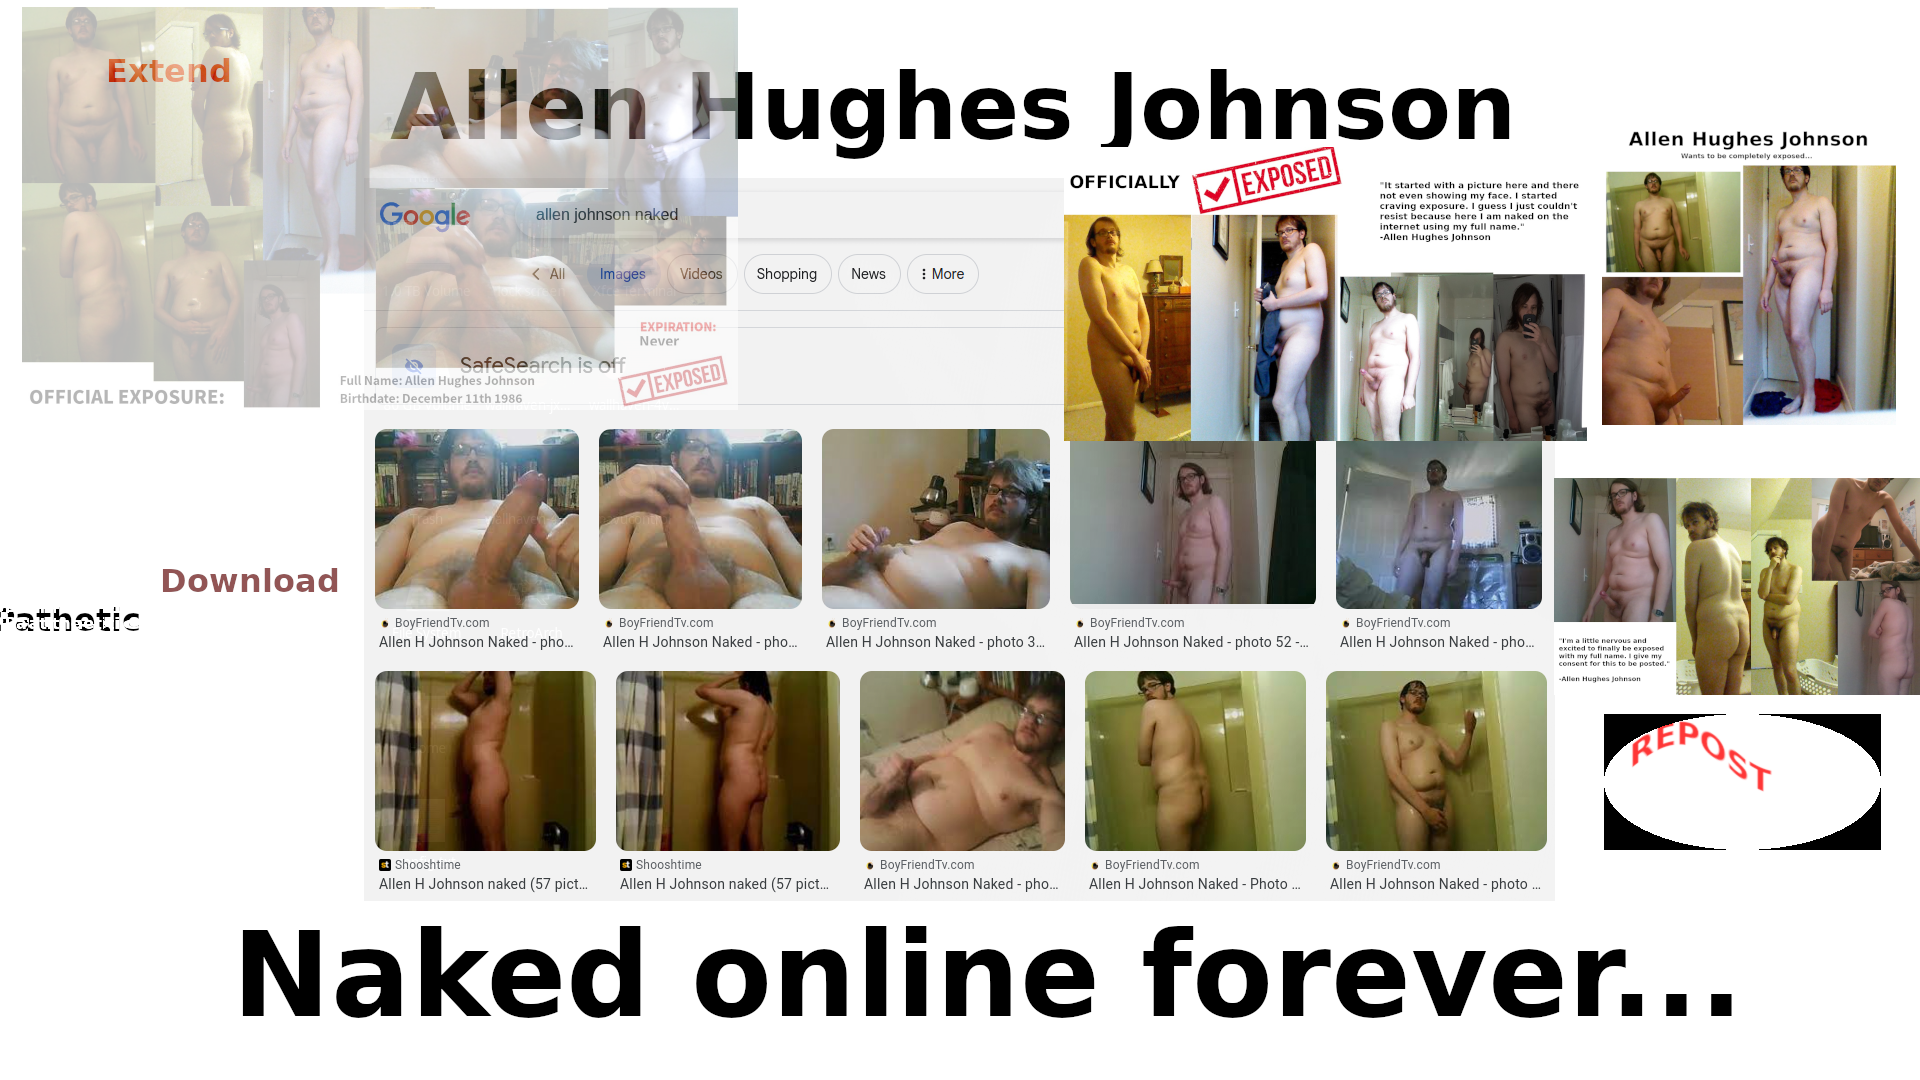 more Allen Hughes Johnson